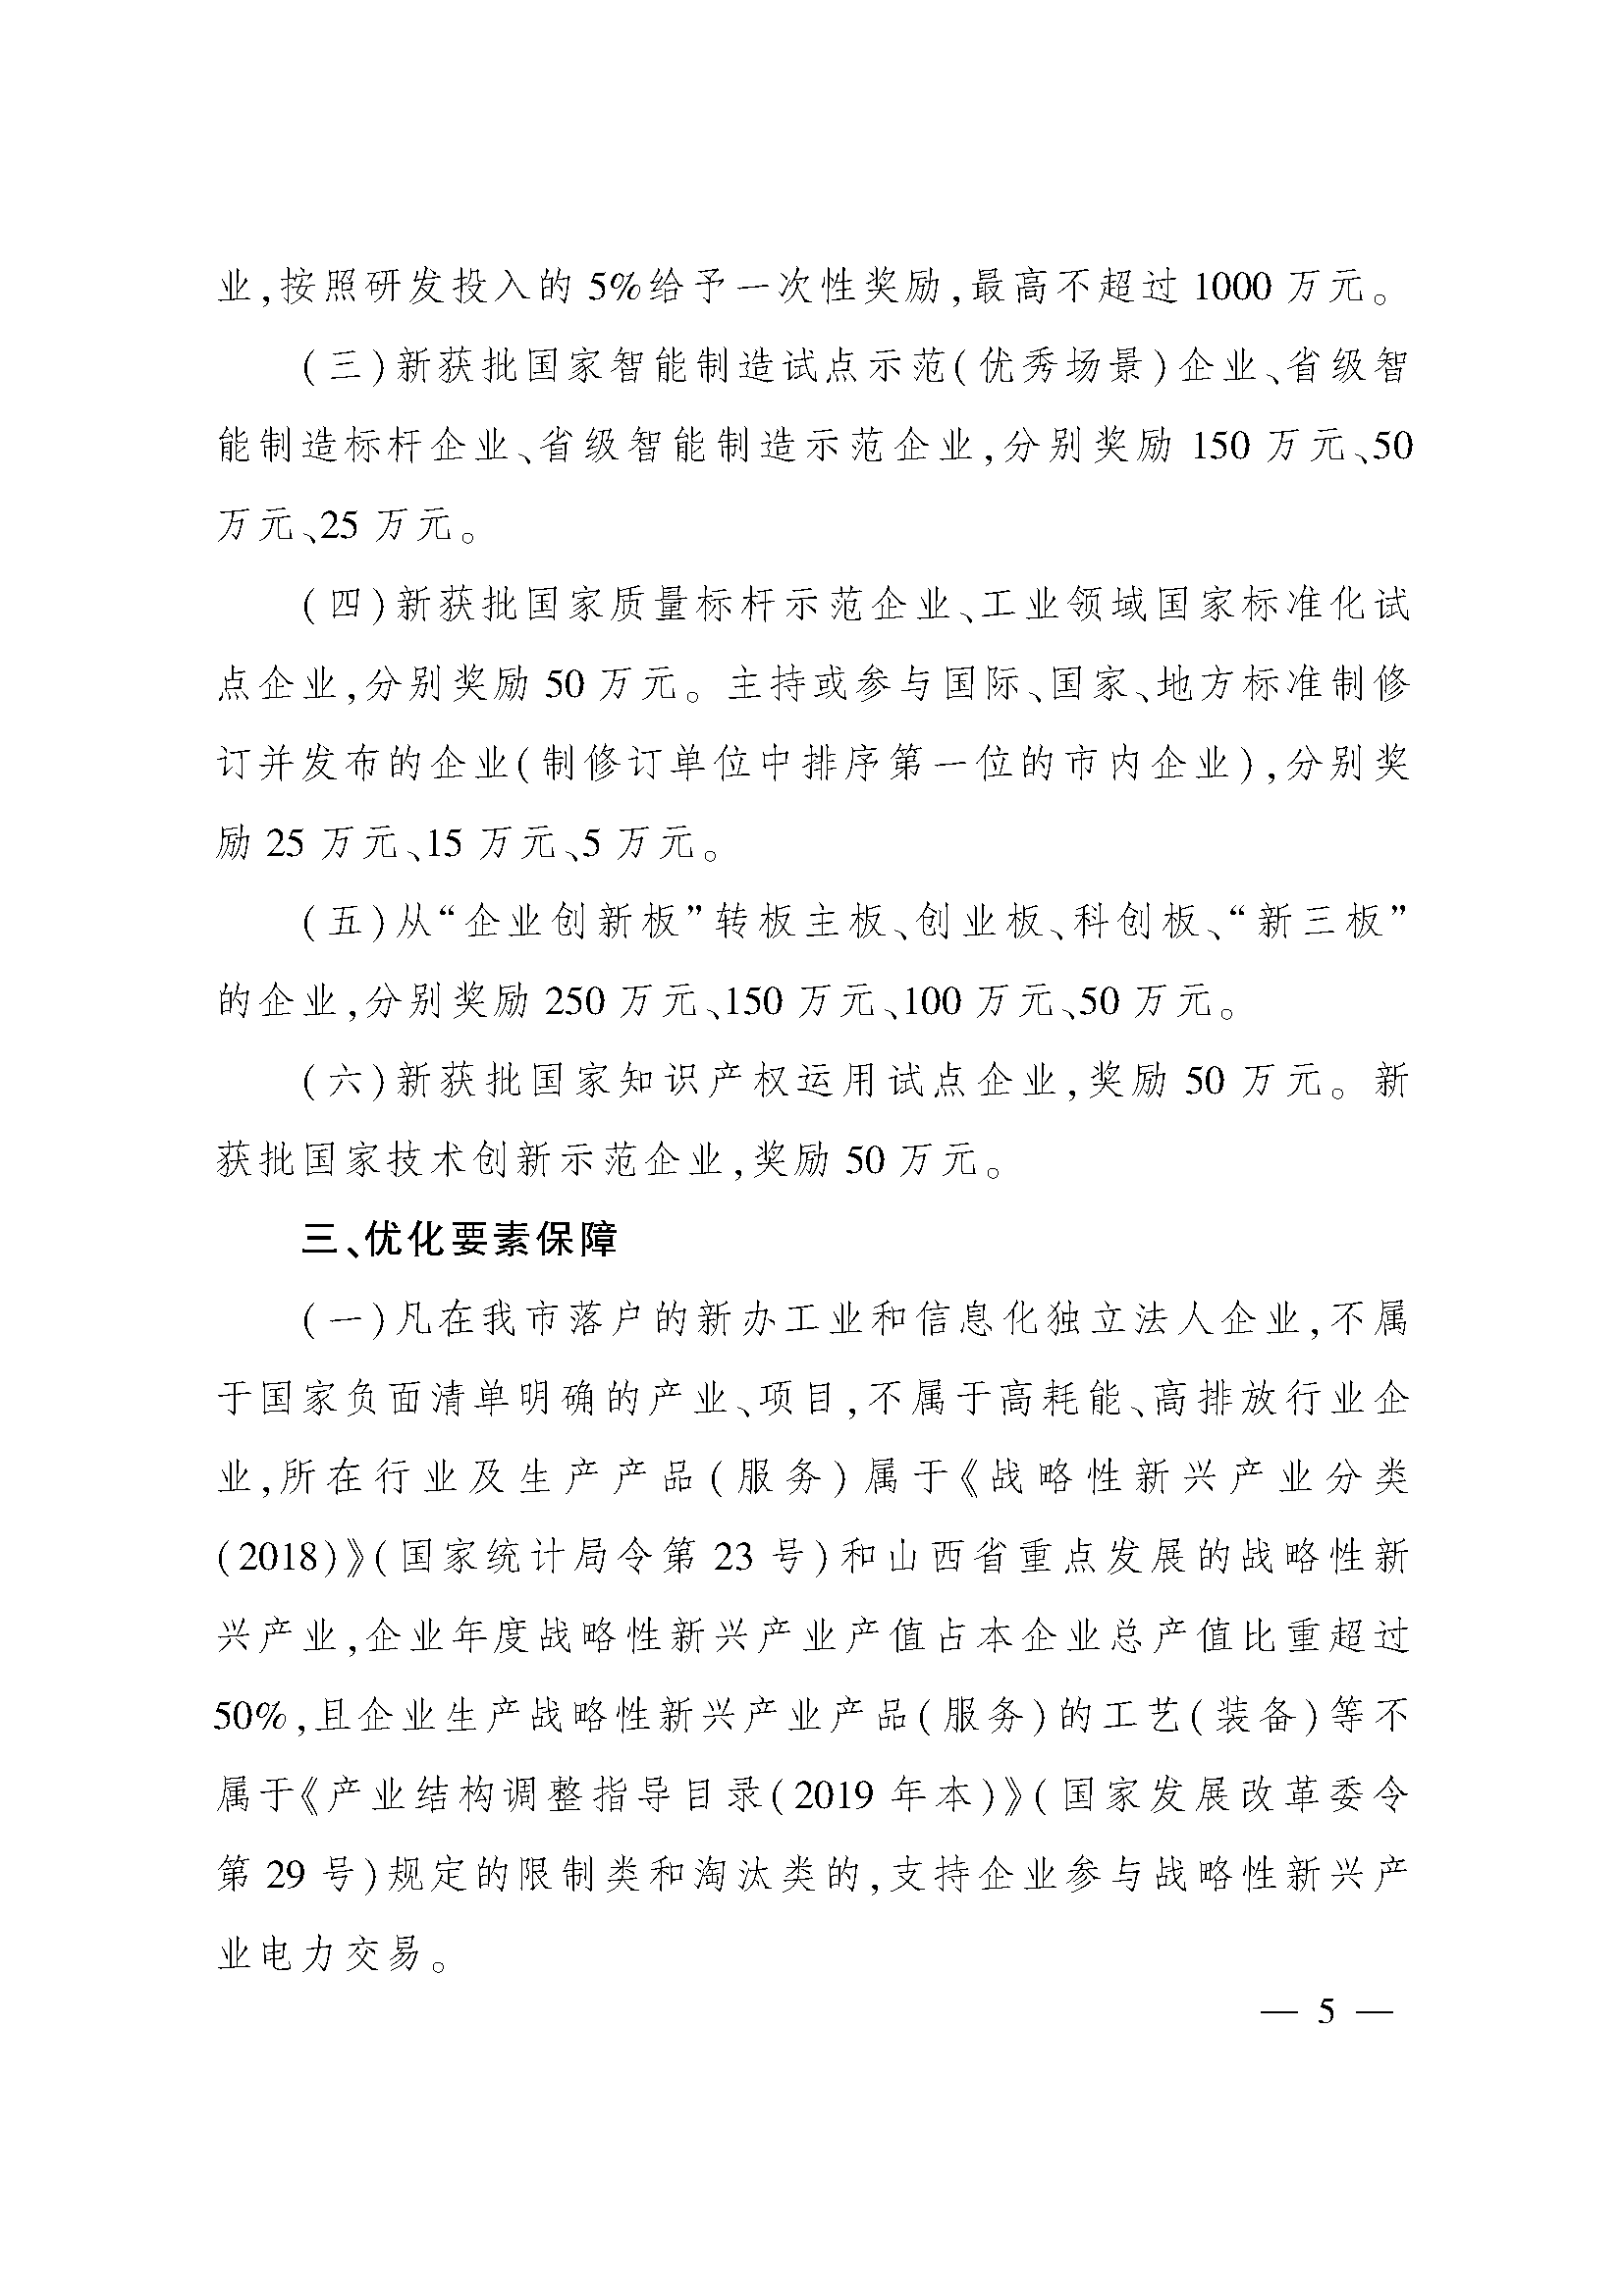 太原市人民政府办公室关于印发太原市招商引资若干措施的通知(图5)